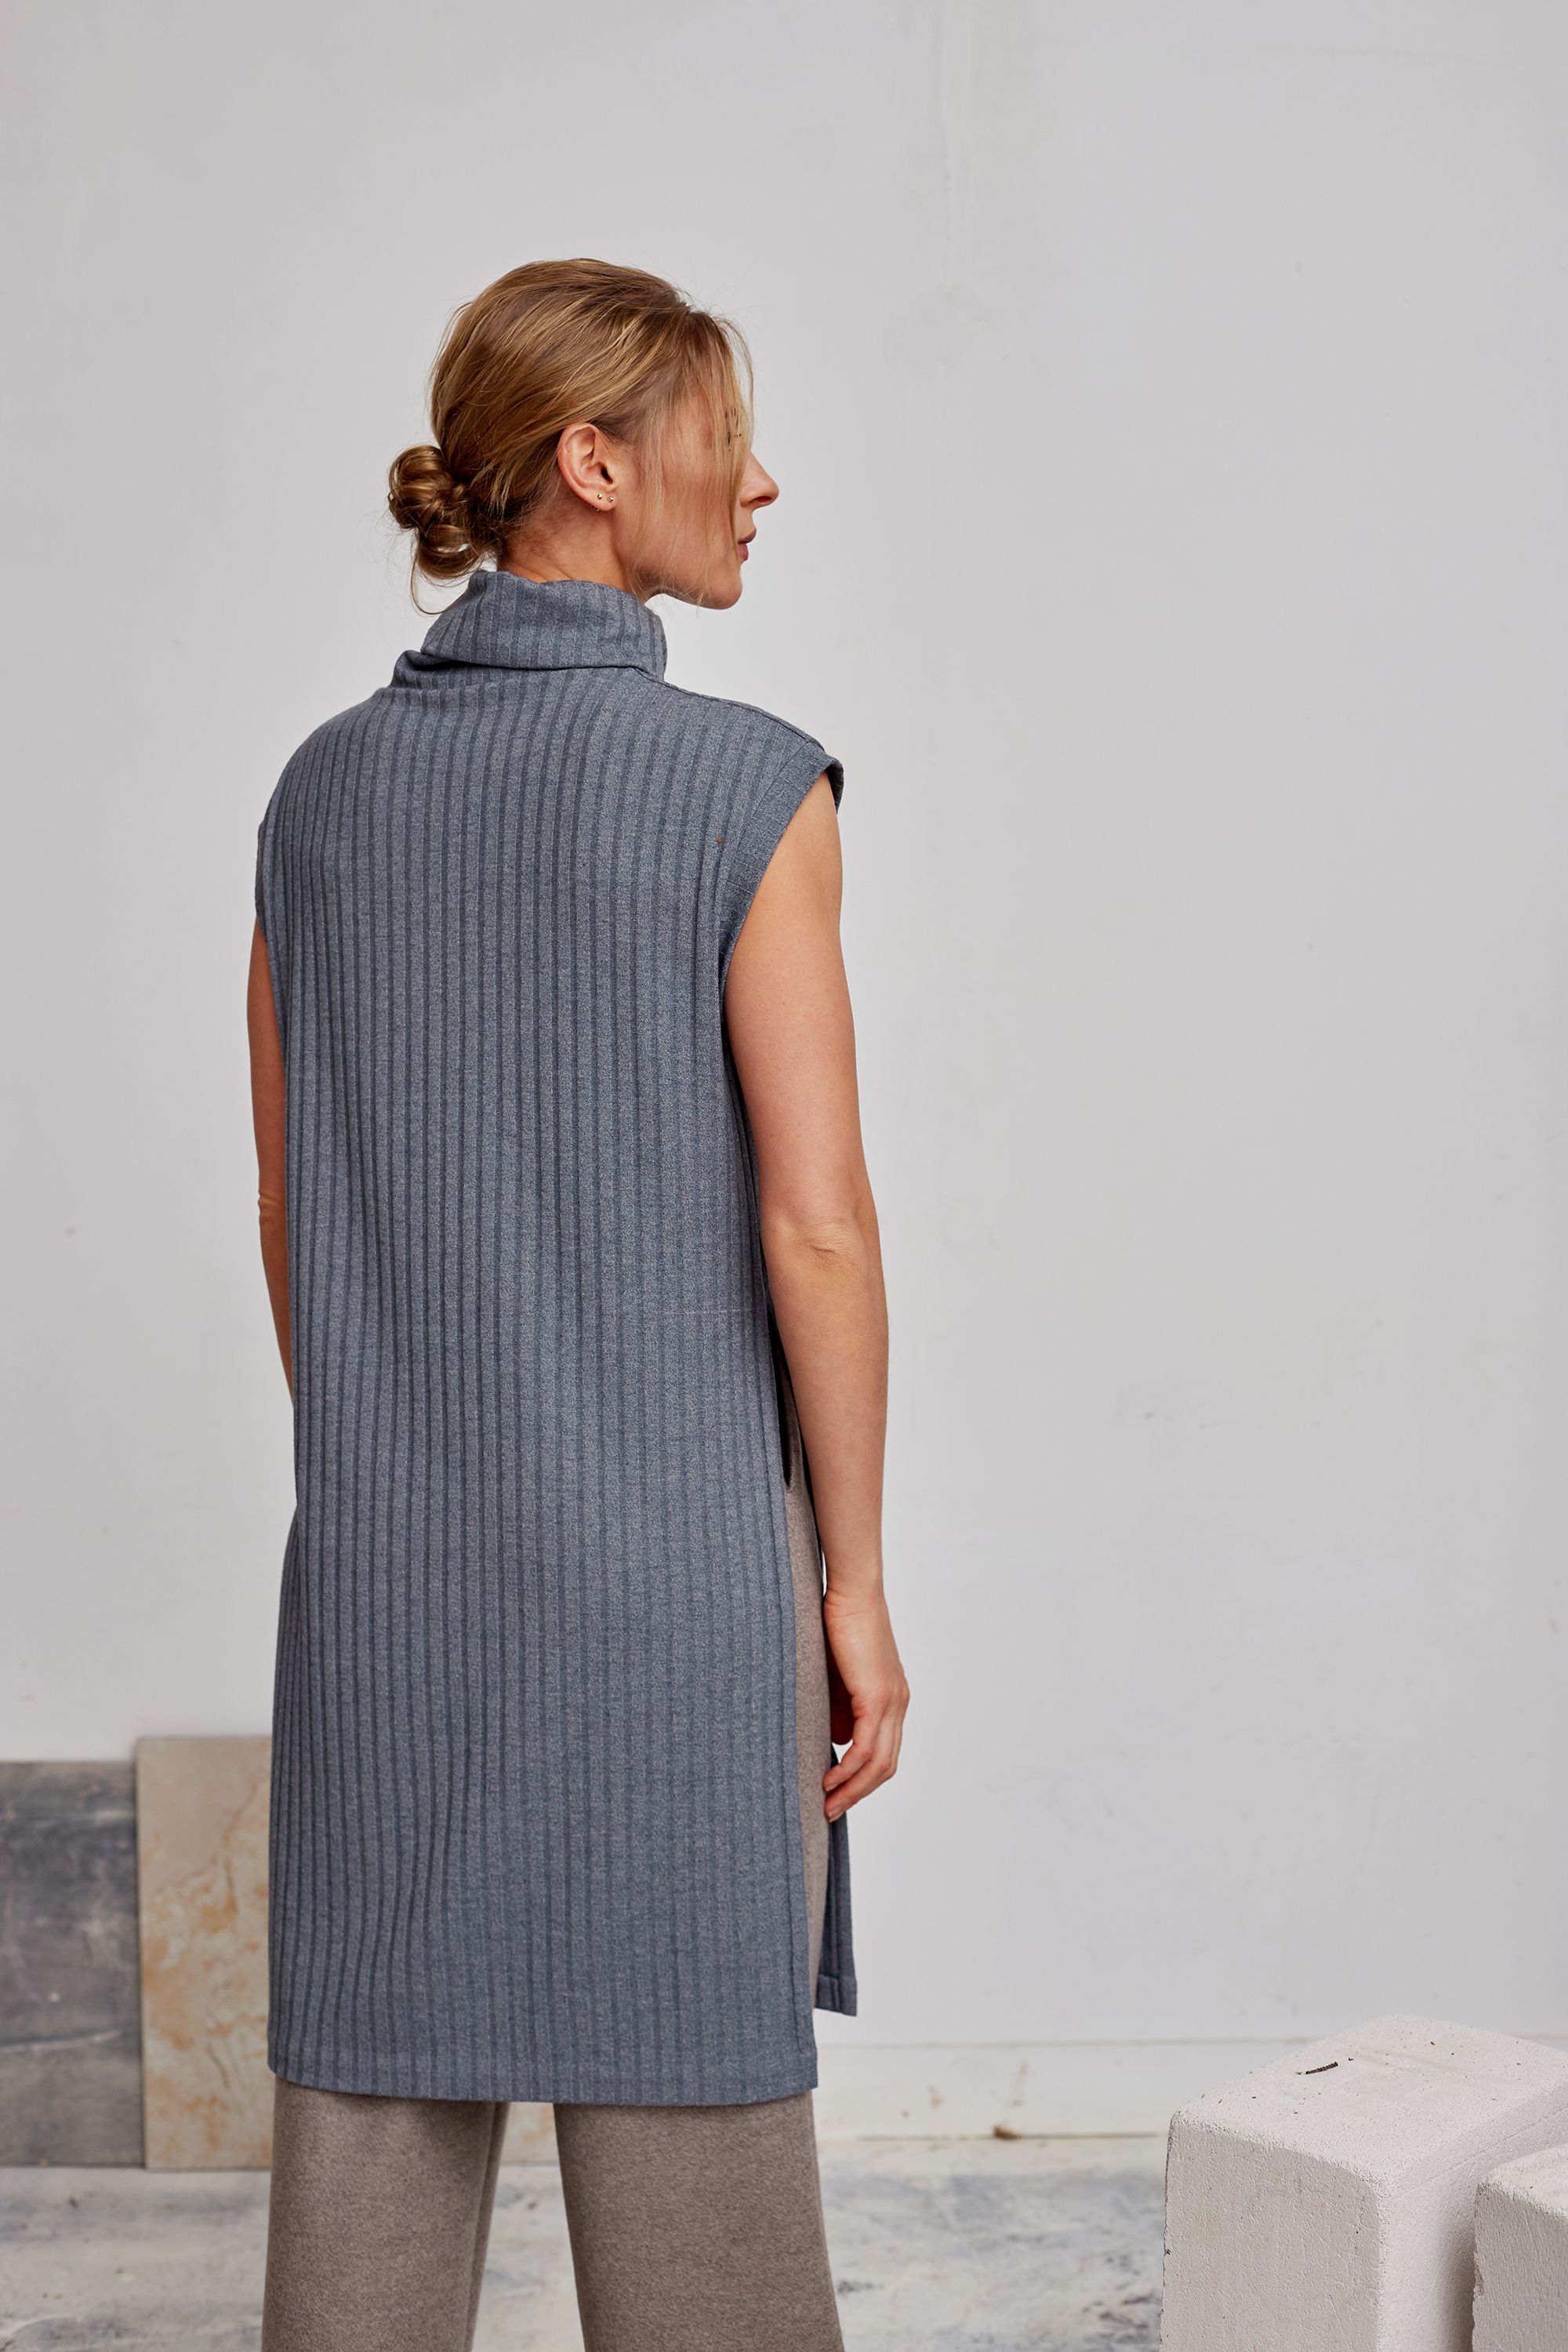 Tunic, pattern №733 buy online